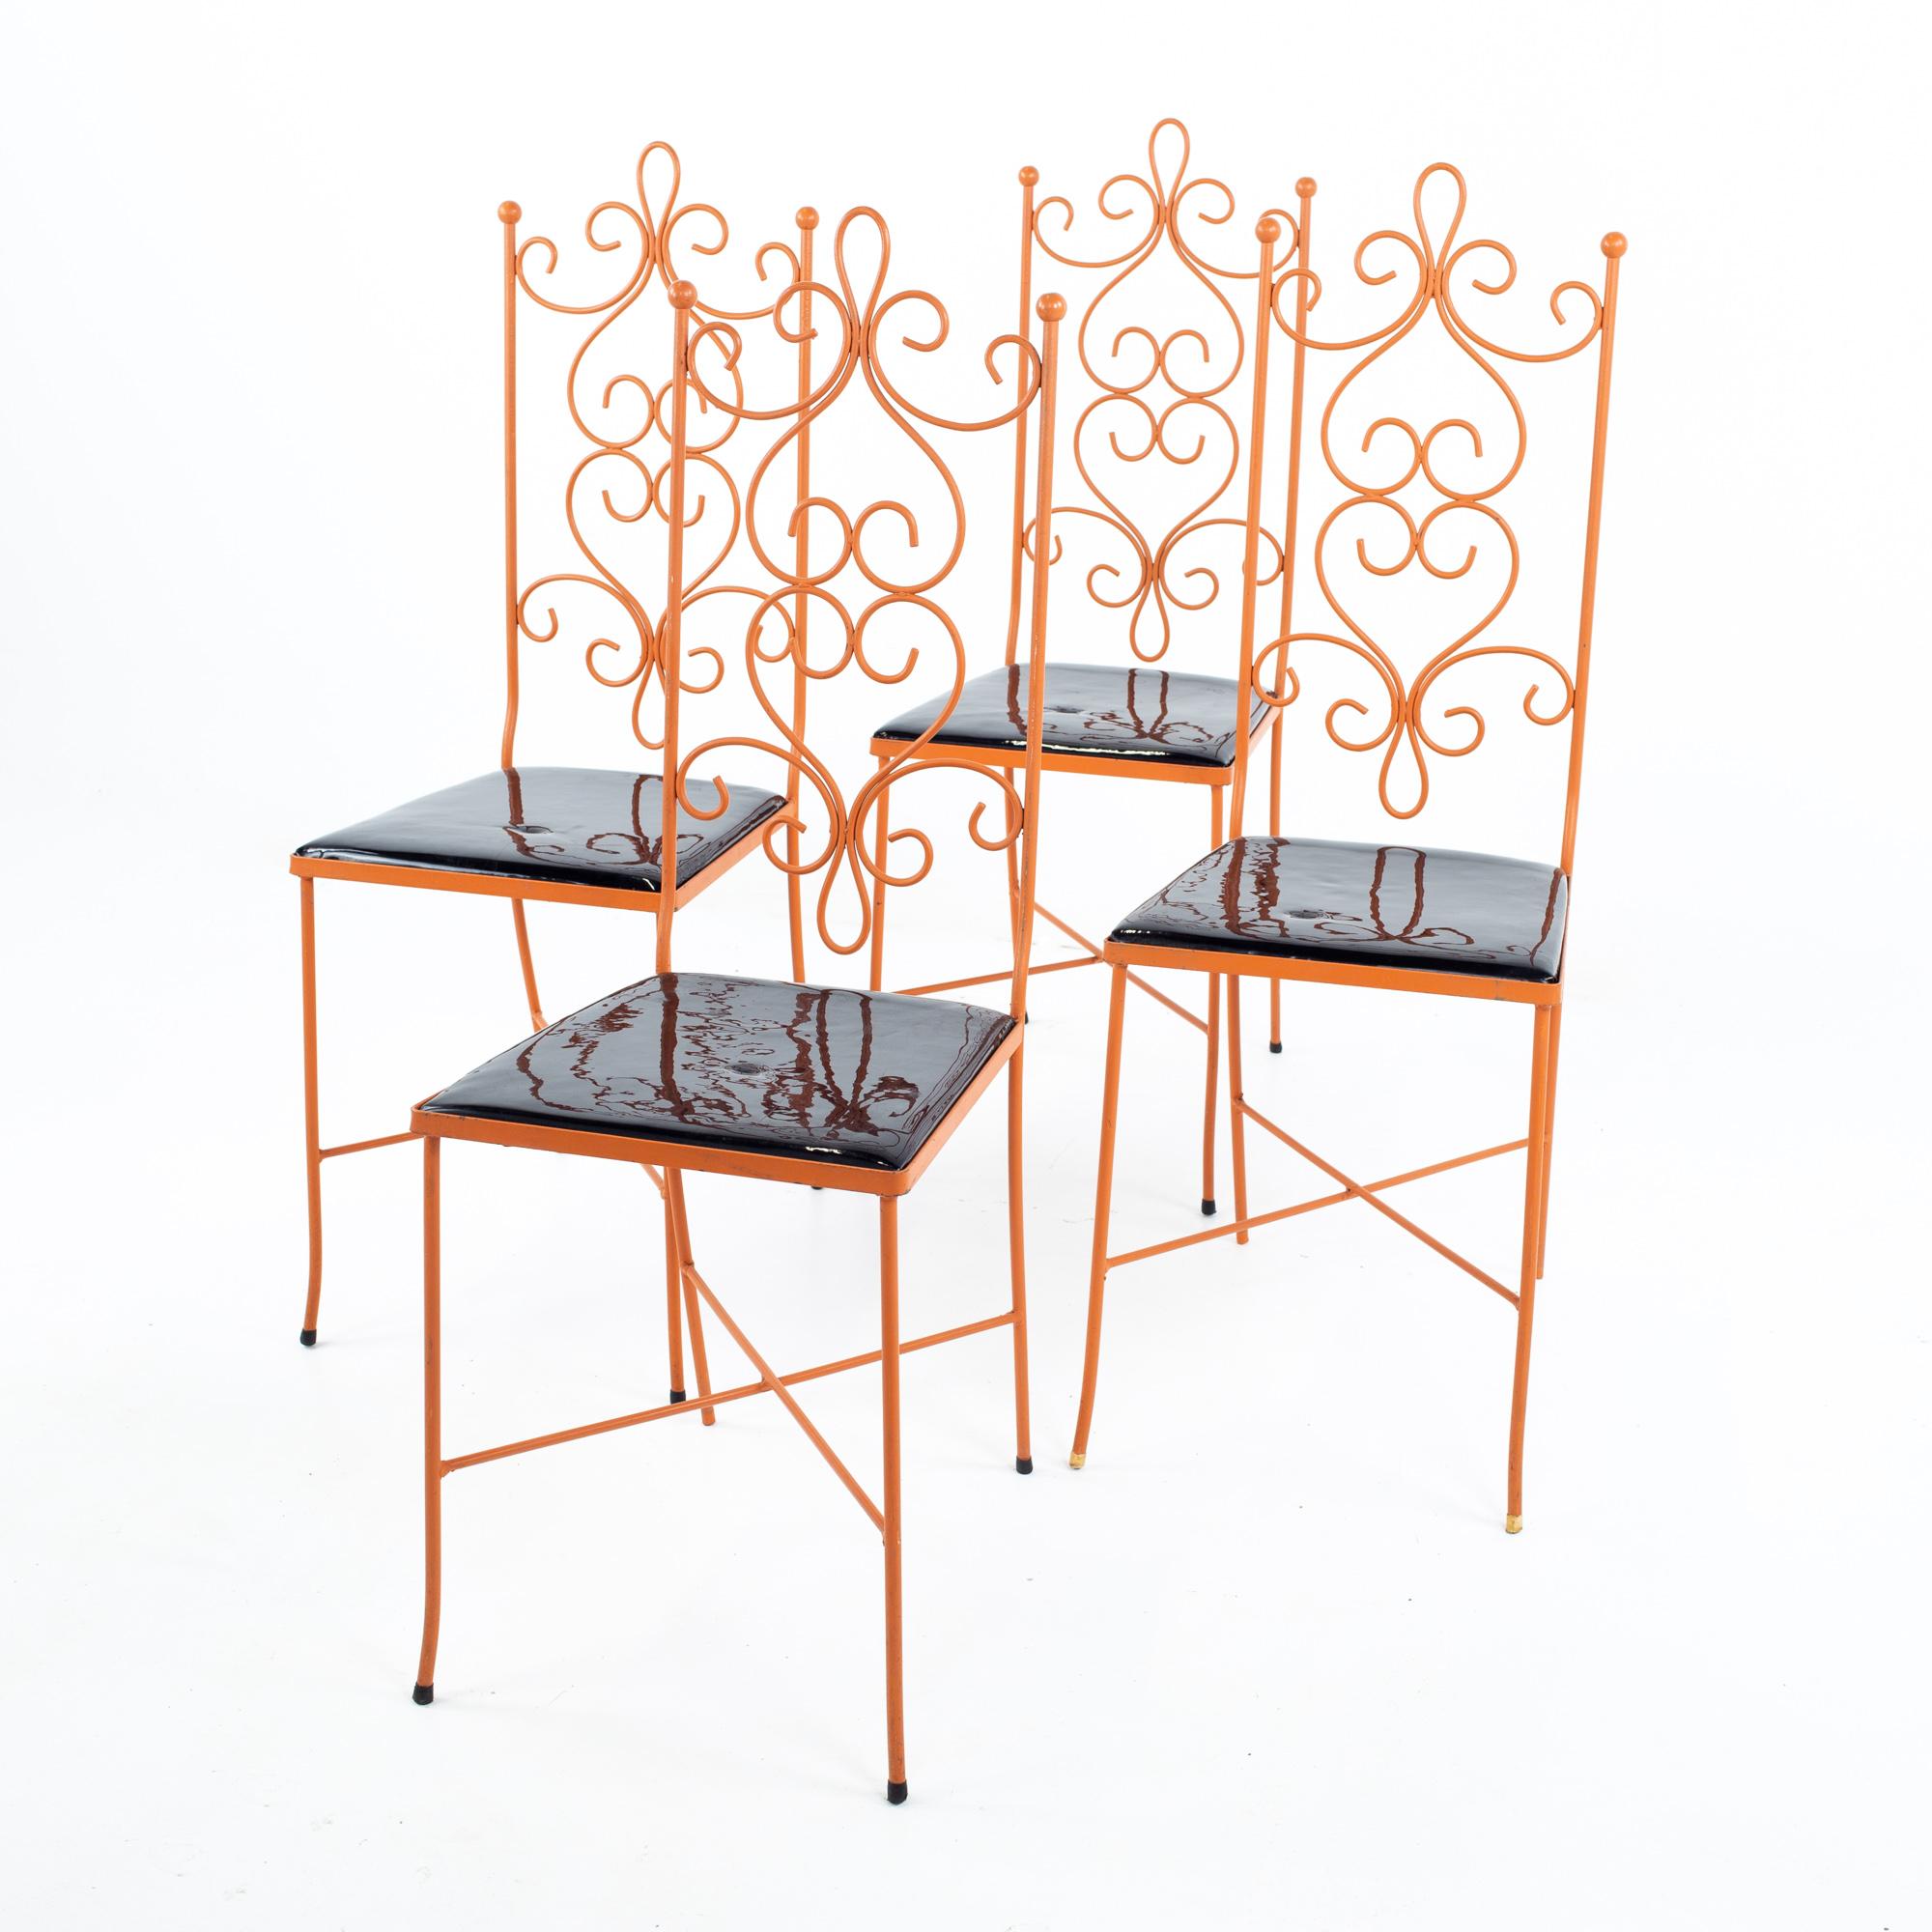 Chaises de salle à manger en métal orange de style Arthur Umanoff - jeu de 4
Chaque chaise mesure : 13.5 de large x 15,5 de profond x 38 de haut, avec une hauteur de siège de 17,25

Tous les meubles peuvent être obtenus dans ce que nous appelons